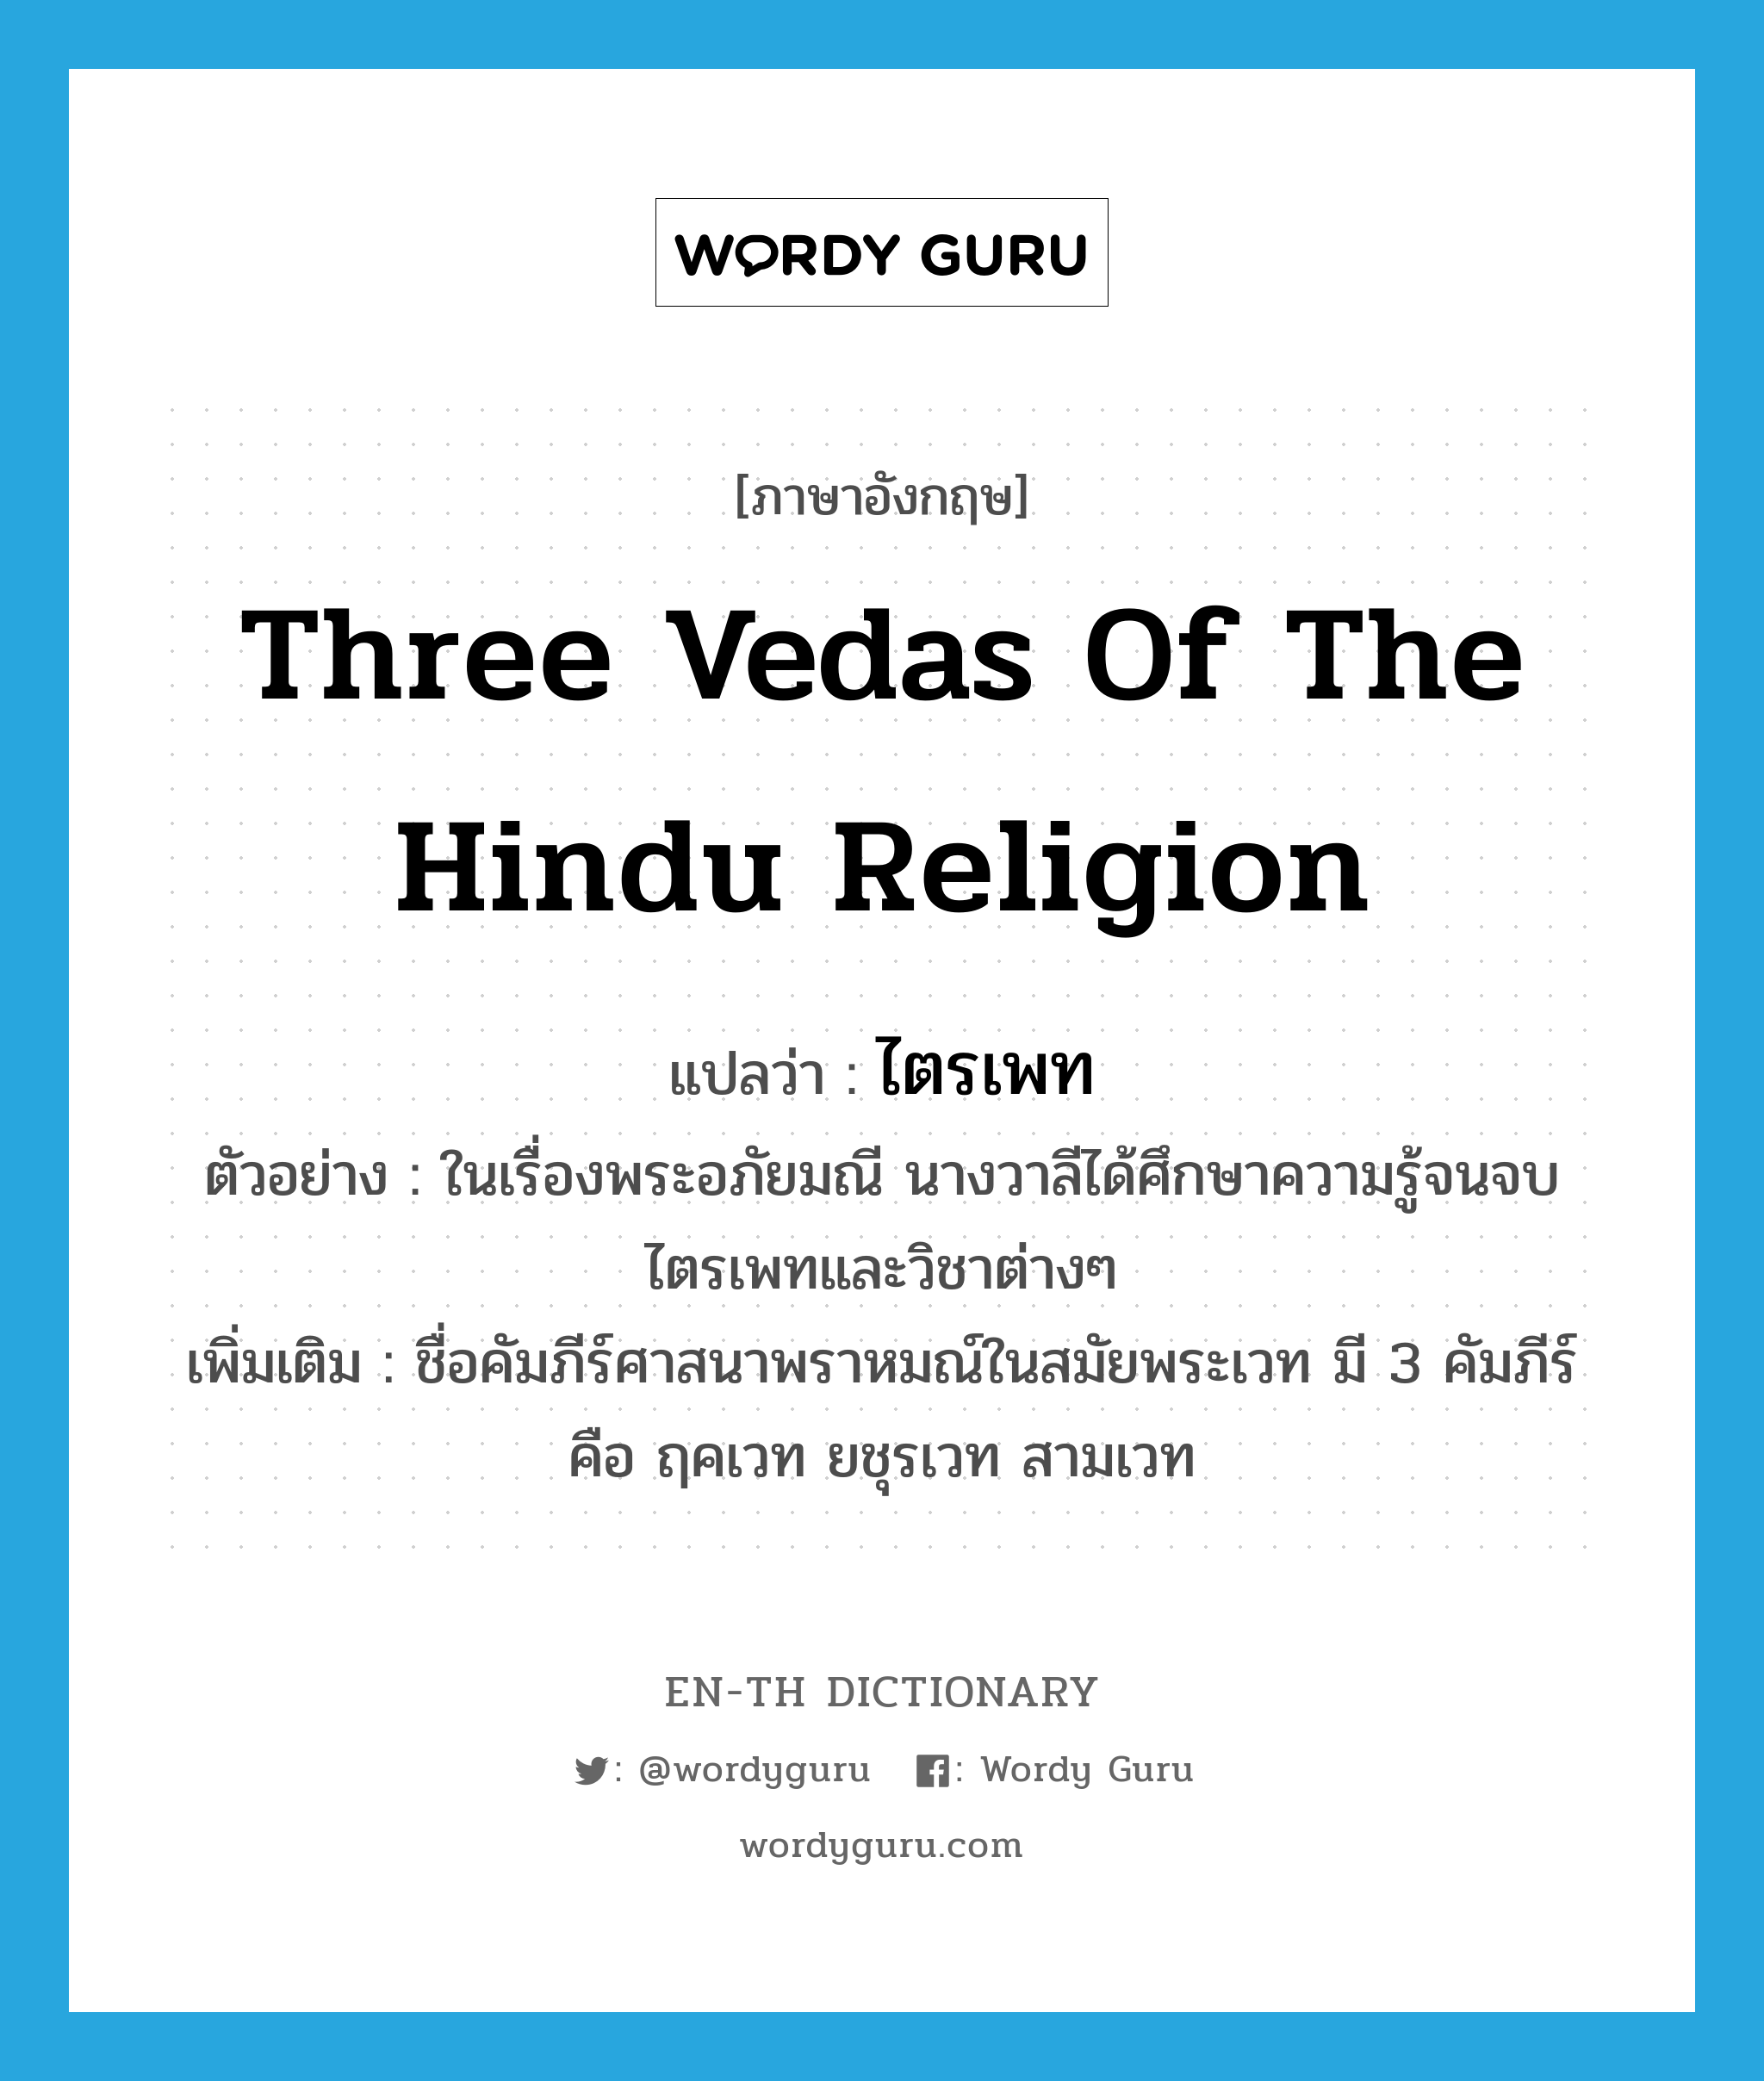 Three Vedas of the Hindu religion แปลว่า?, คำศัพท์ภาษาอังกฤษ Three Vedas of the Hindu religion แปลว่า ไตรเพท ประเภท N ตัวอย่าง ในเรื่องพระอภัยมณี นางวาลีได้ศึกษาความรู้จนจบไตรเพทและวิชาต่างๆ เพิ่มเติม ชื่อคัมภีร์ศาสนาพราหมณ์ในสมัยพระเวท มี 3 คัมภีร์ คือ ฤคเวท ยชุรเวท สามเวท หมวด N